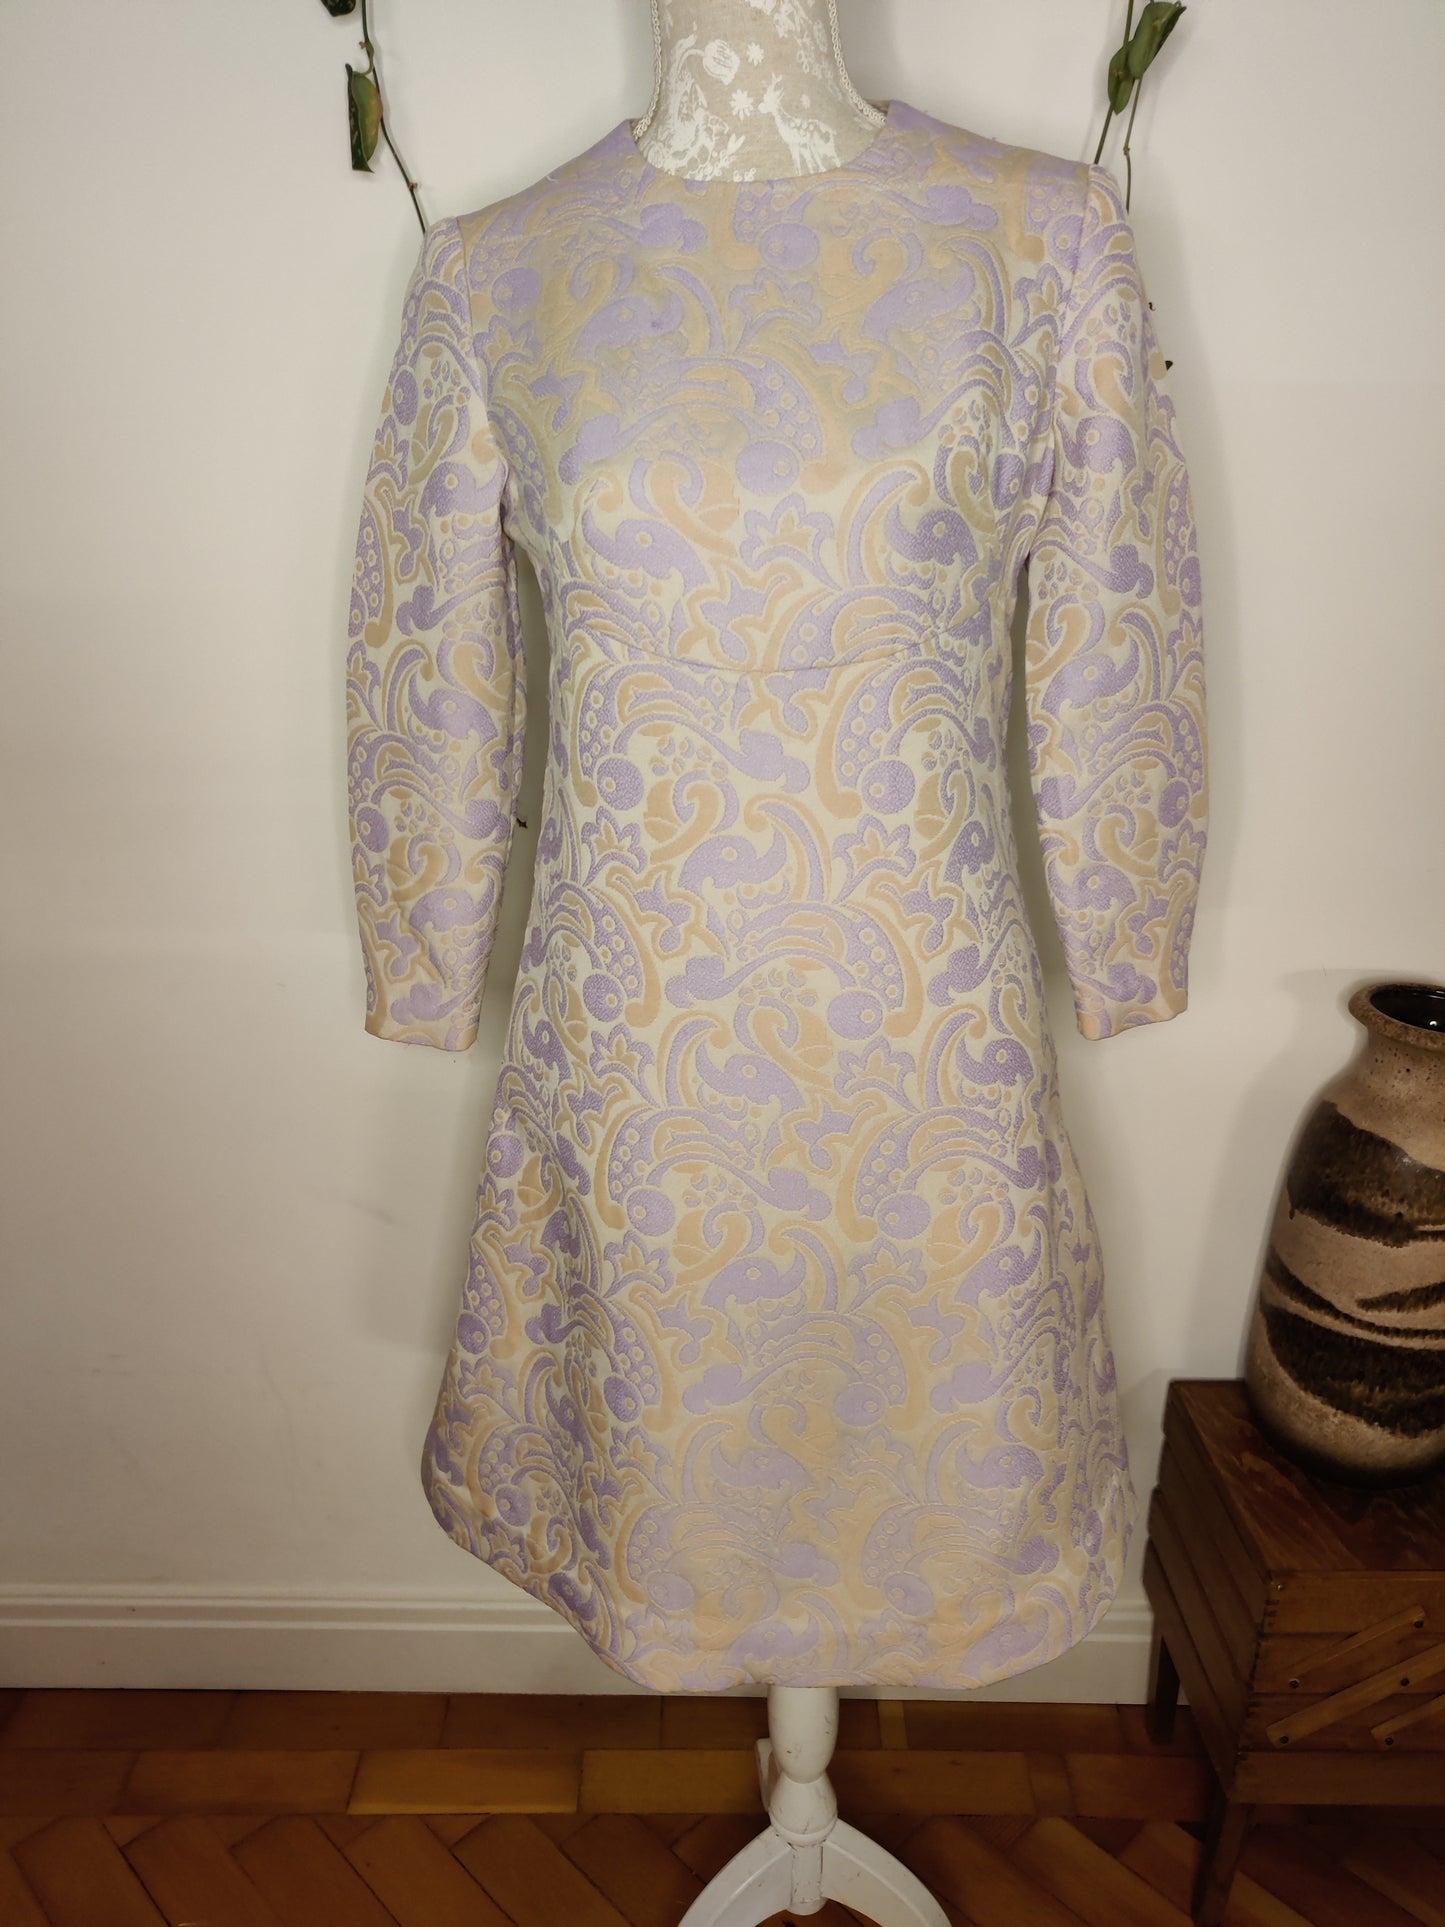 Stunning vintage modette dress in lilac